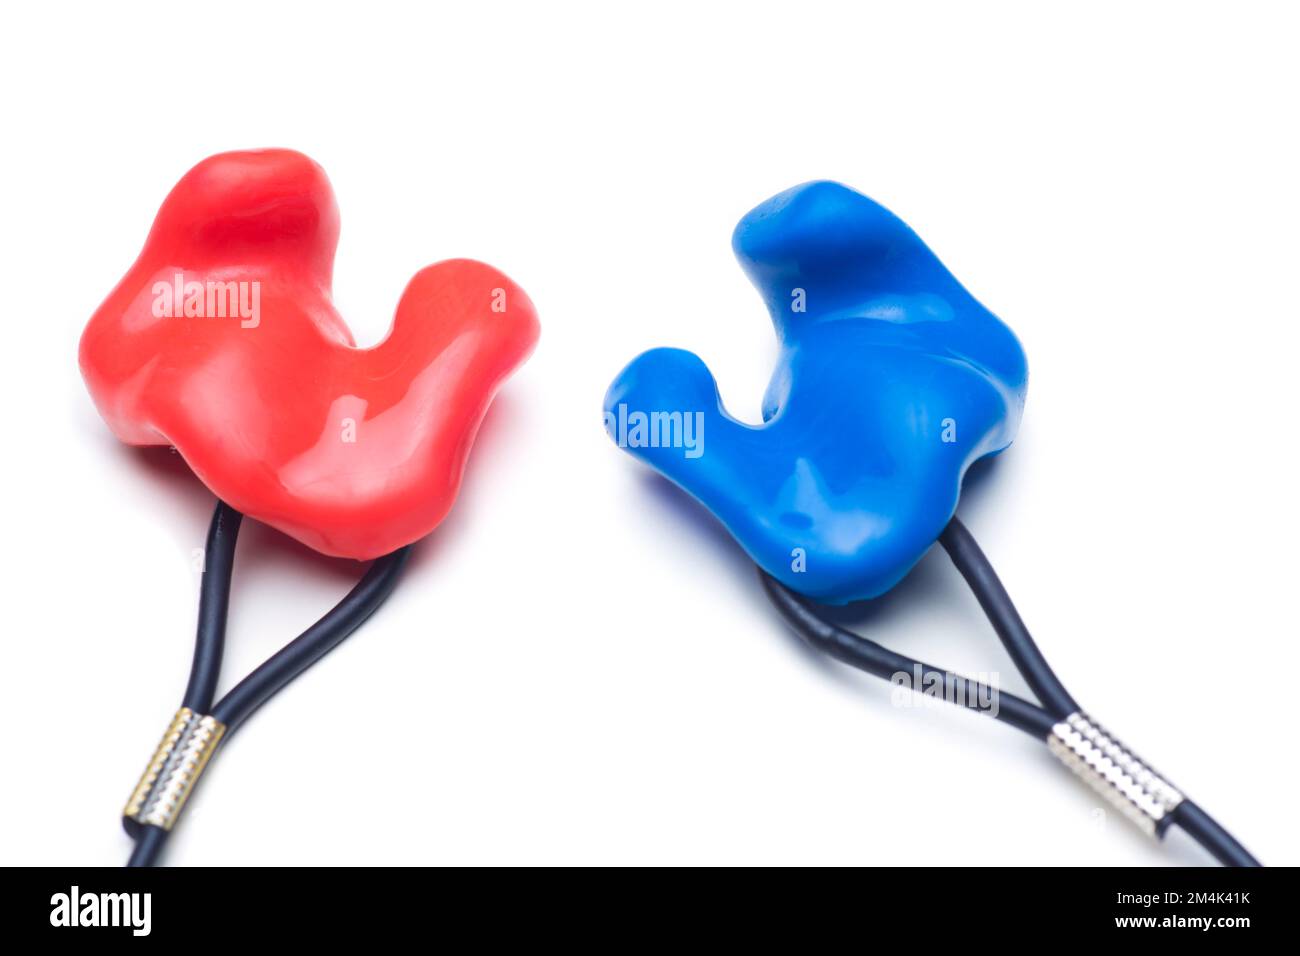 Nahaufnahme von individuellen Gehörschutzstöpseln aus Silikon für Gehörschutz oder Schwimmen in rot und blau isoliert auf weißem Hintergrund Stockfoto